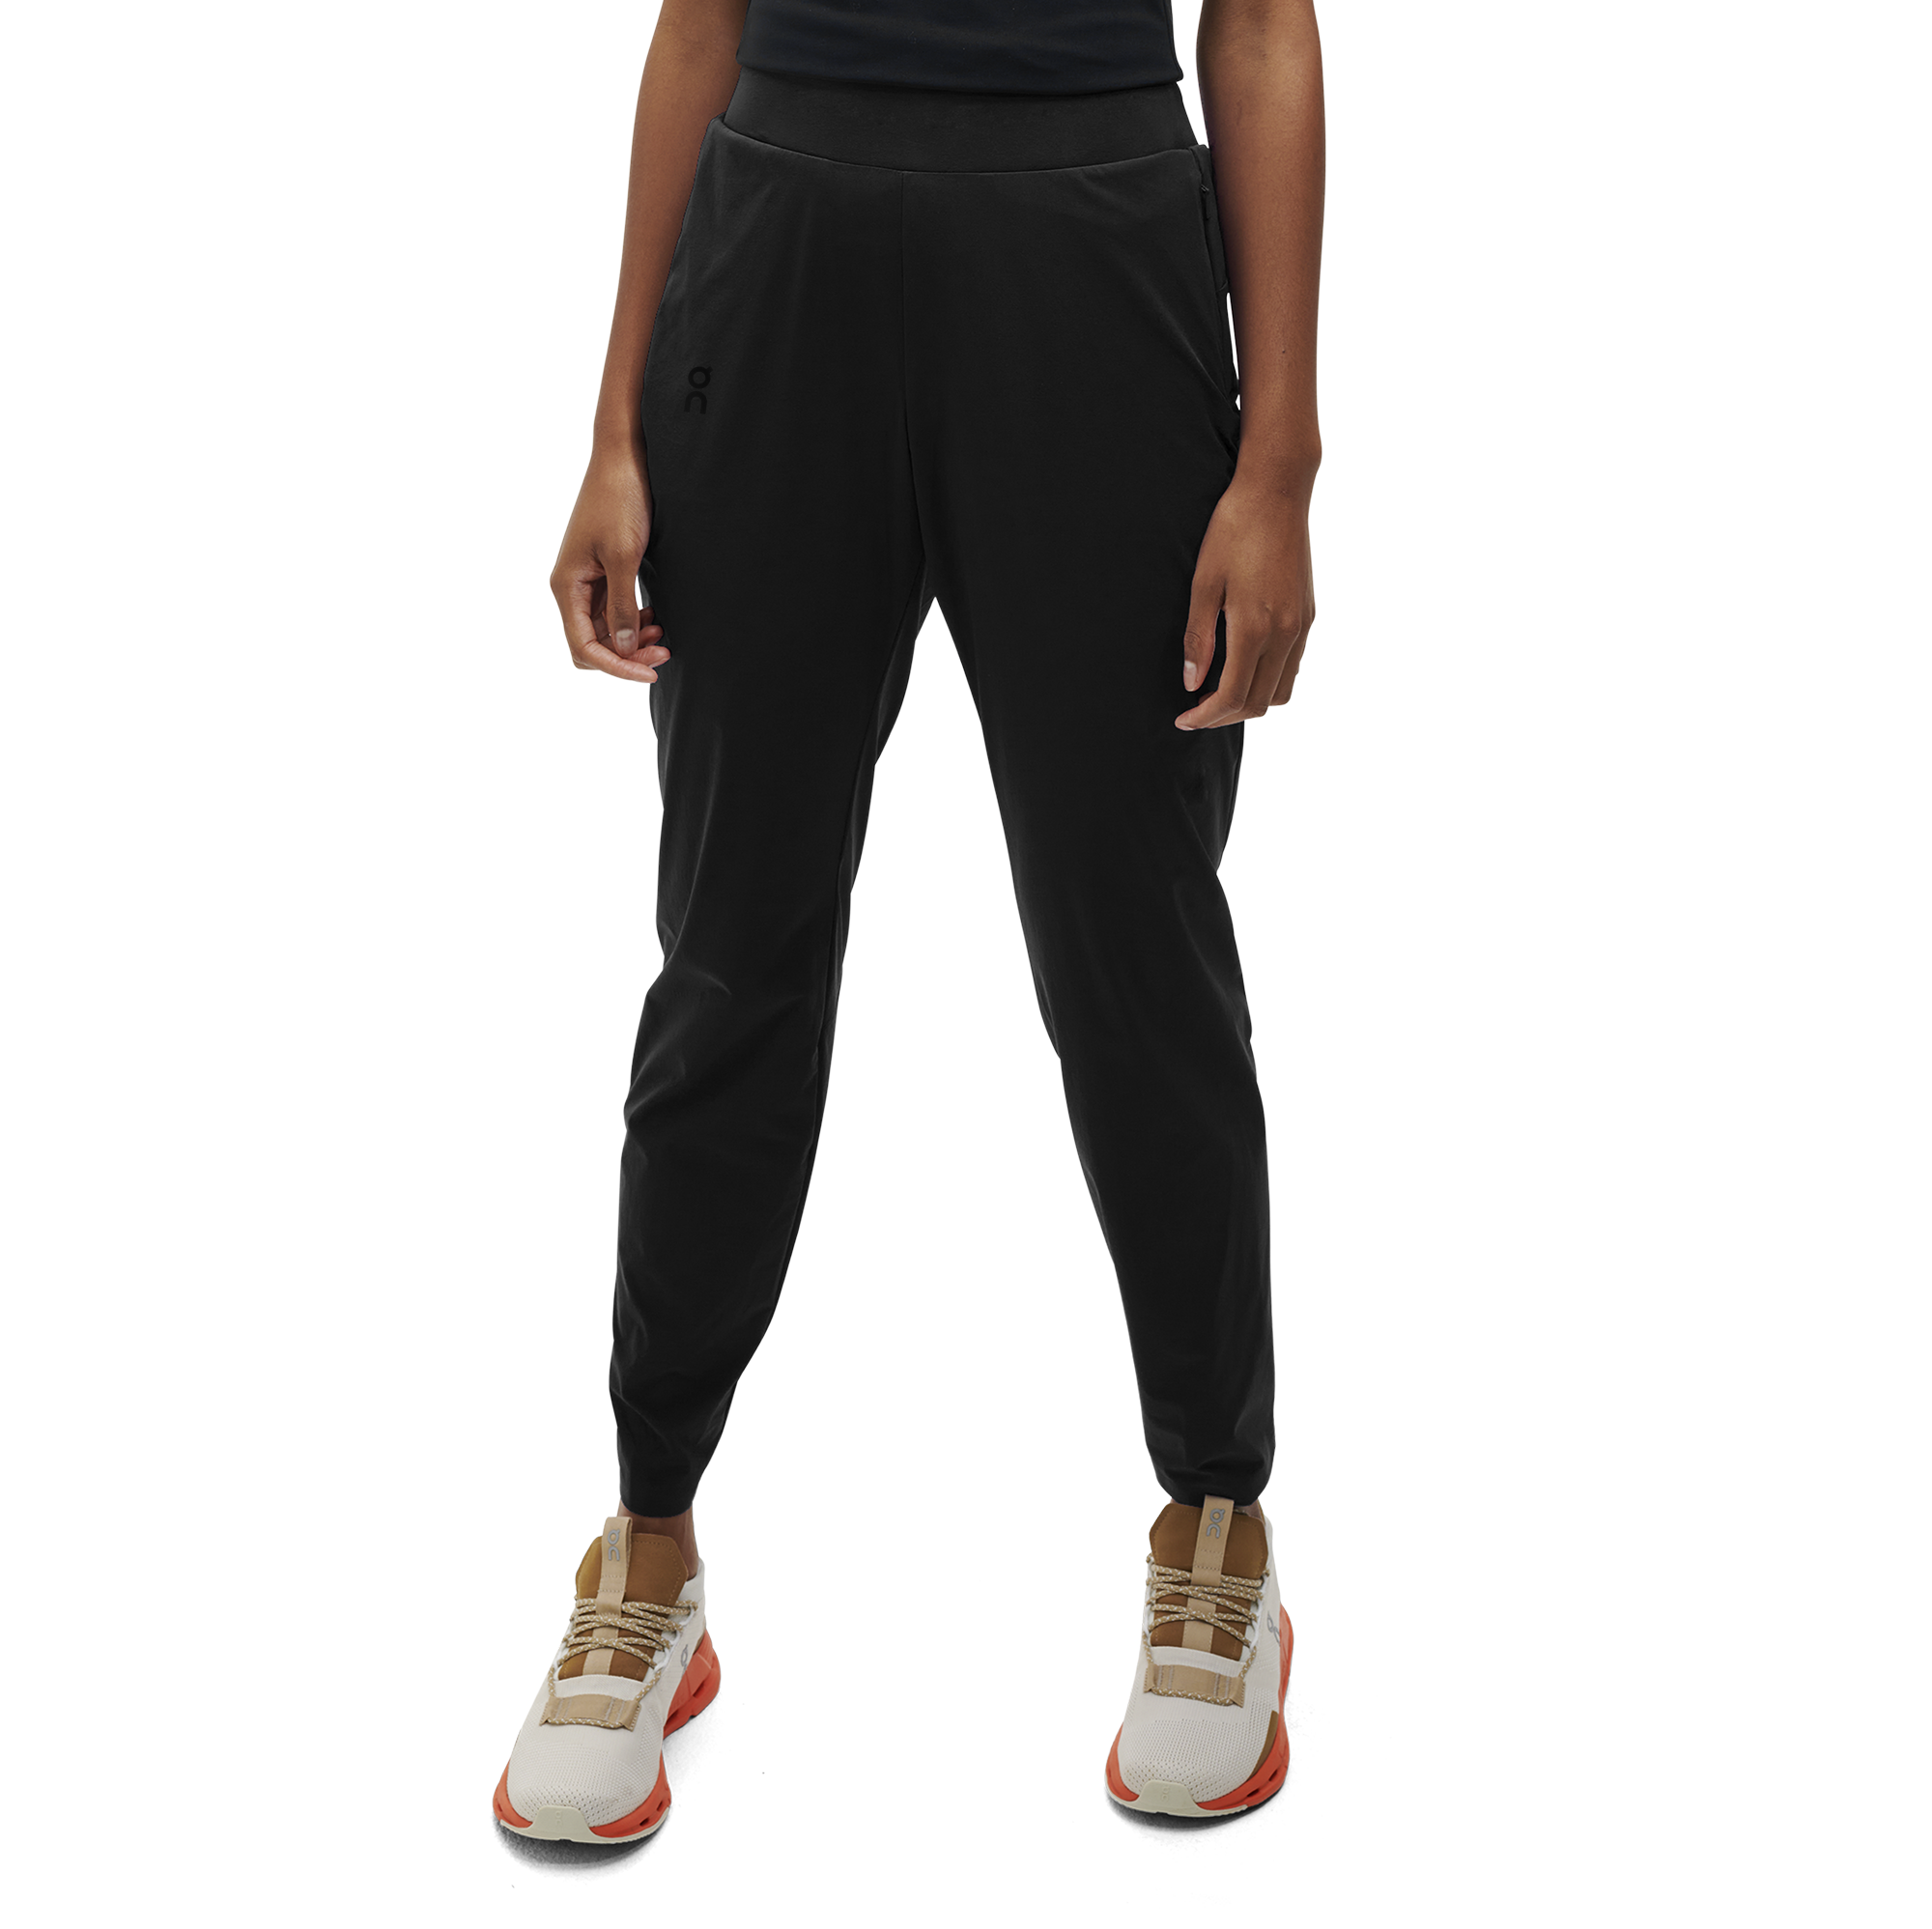 On Lightweight Pants Black Women Women – Running, training, lightweight Pants